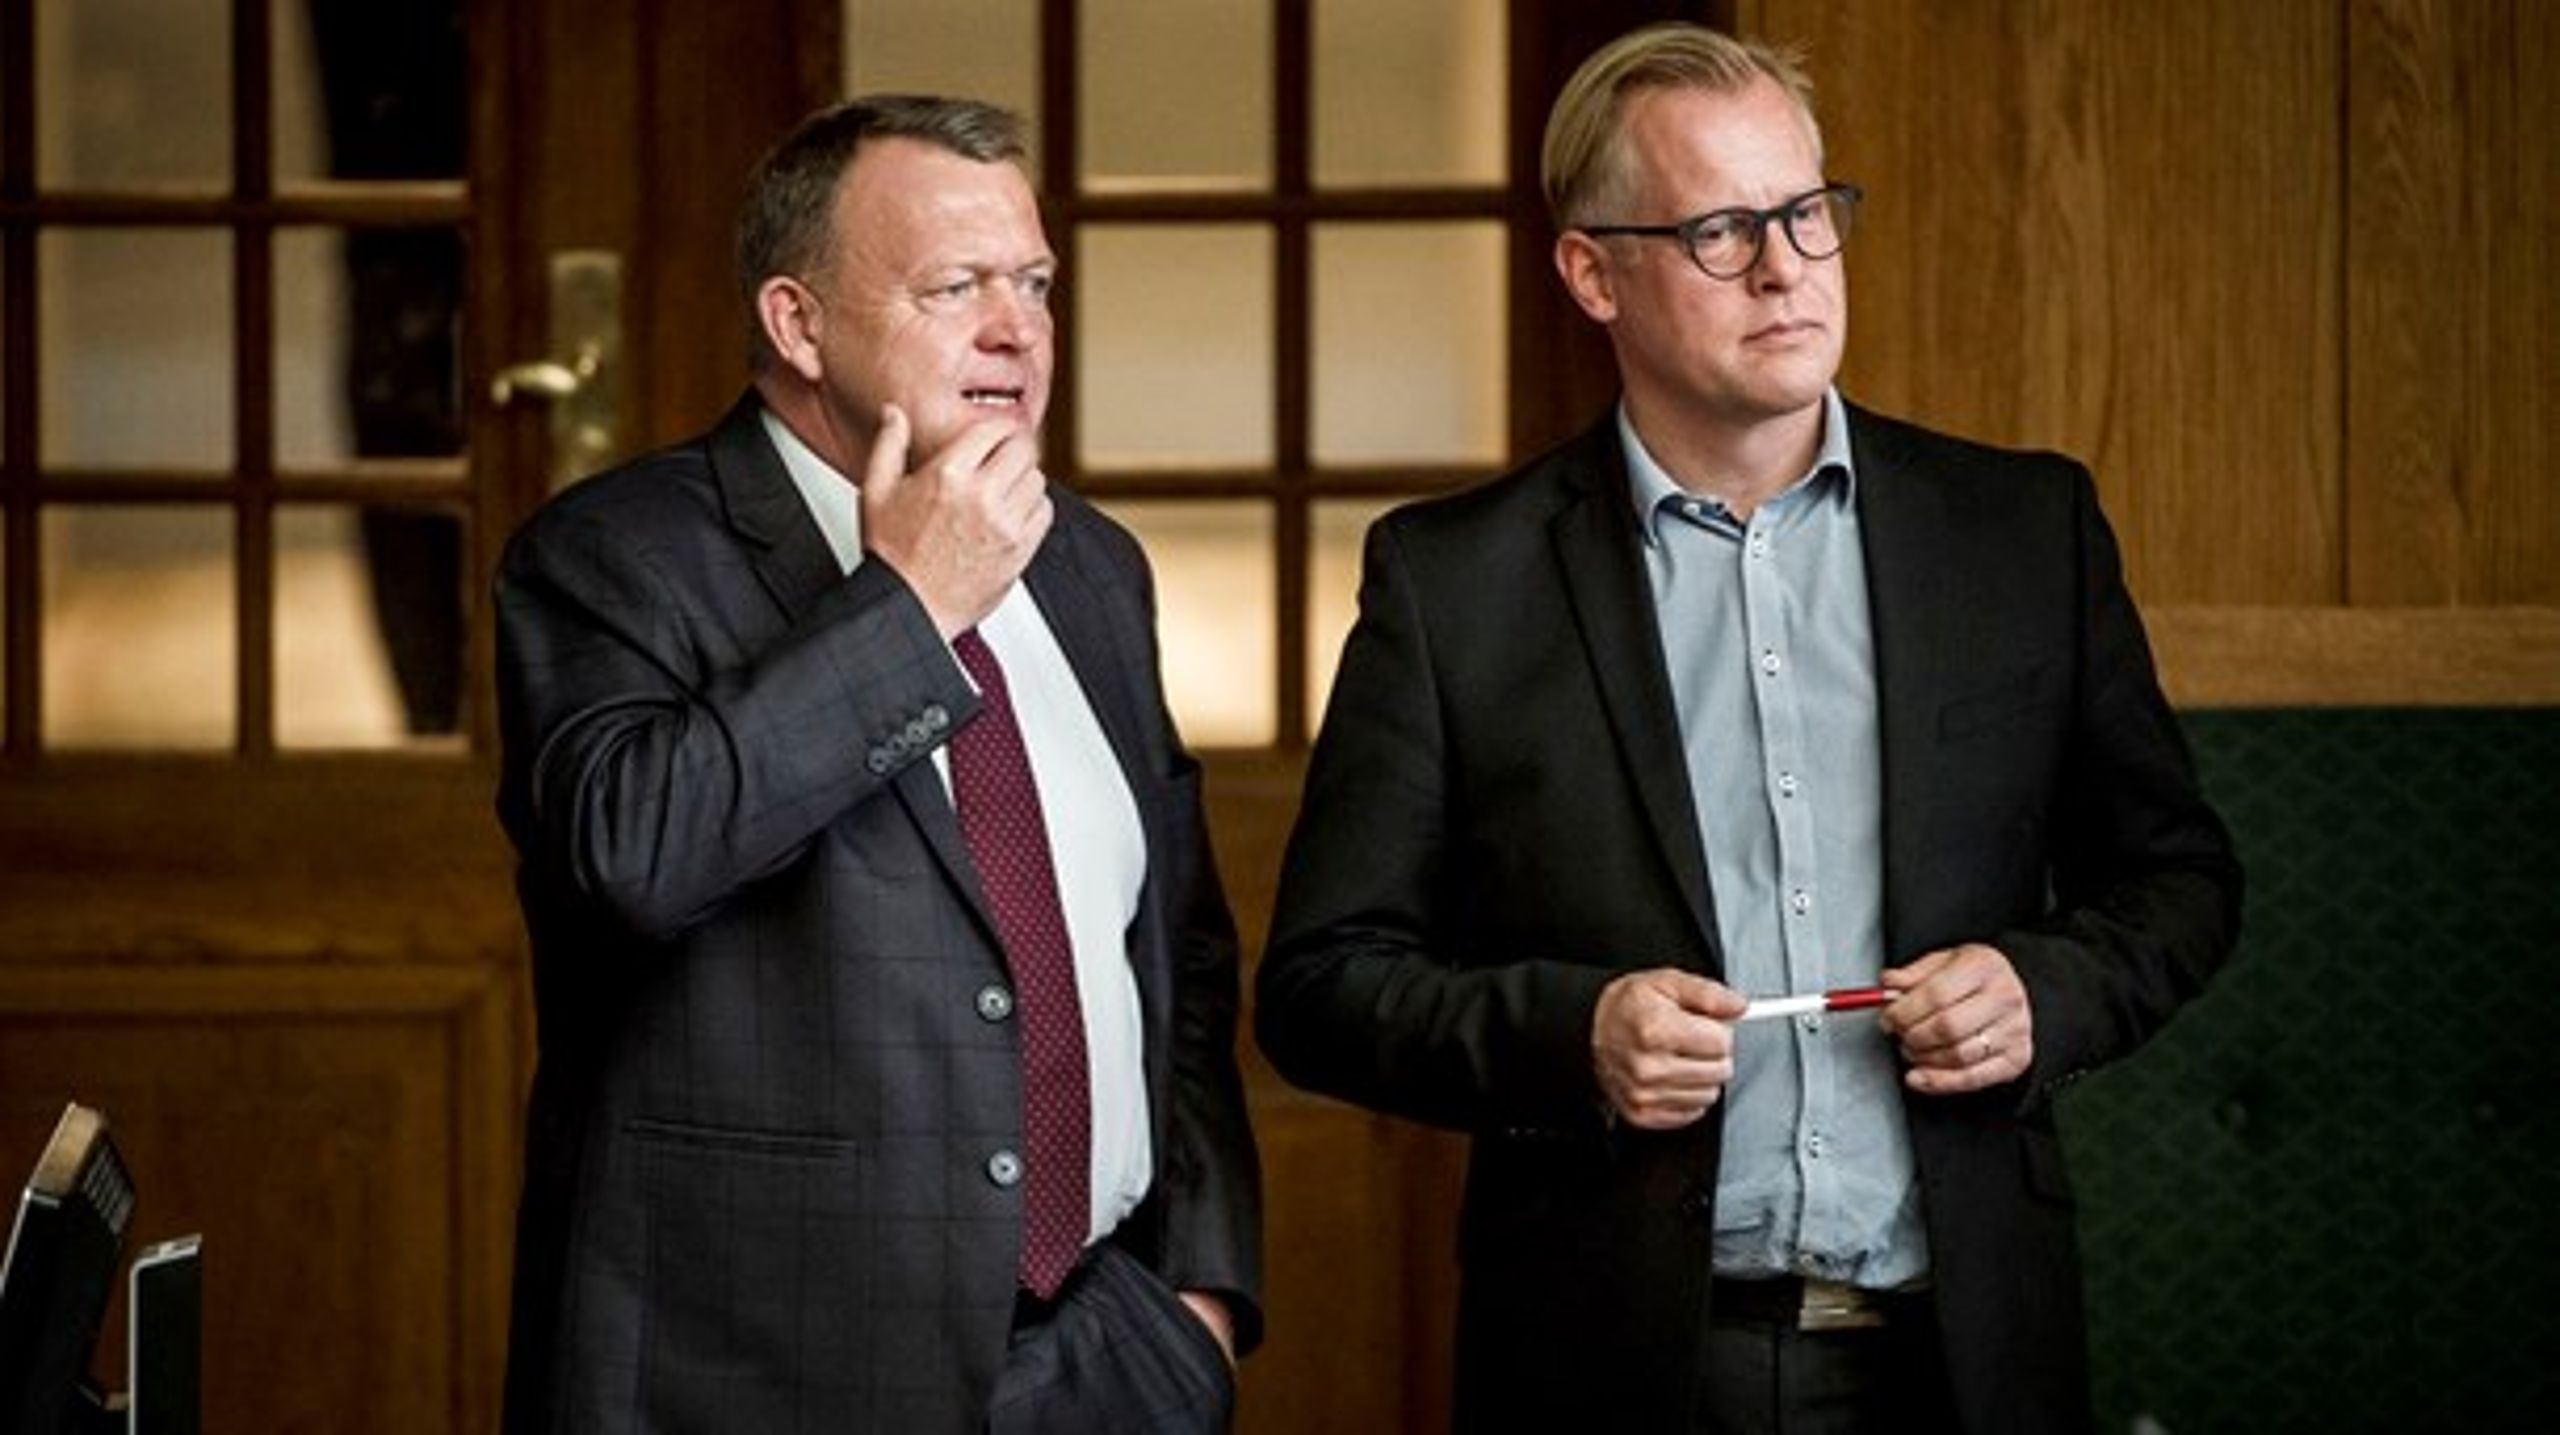 Det fejlslagne kongemord på Lars Løkke Rasmussen i 2014 har skabt splid i Venstre, lyder det fra Carl Holst i&nbsp; erindringsbogen "Prisen for et liv i politik".